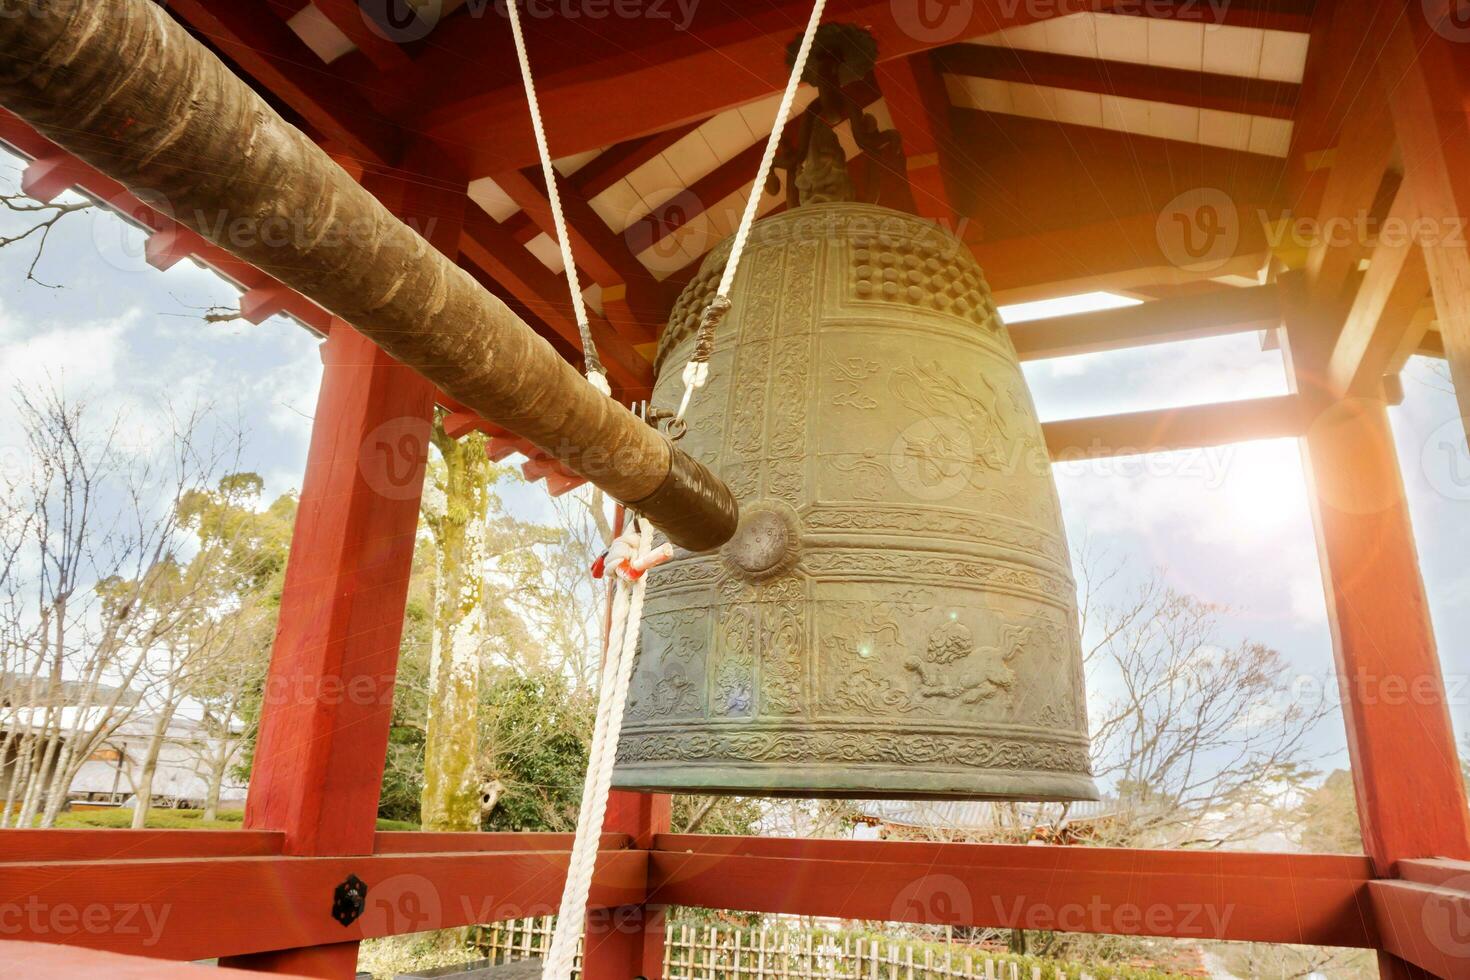 groß Messing- Buddhist Glocke und klopfen Glocke Bauholz von japanisch Tempel im rot Pavillon auf hell Blau Himmel mit Sonne und Linse Fackel Hintergrund. foto